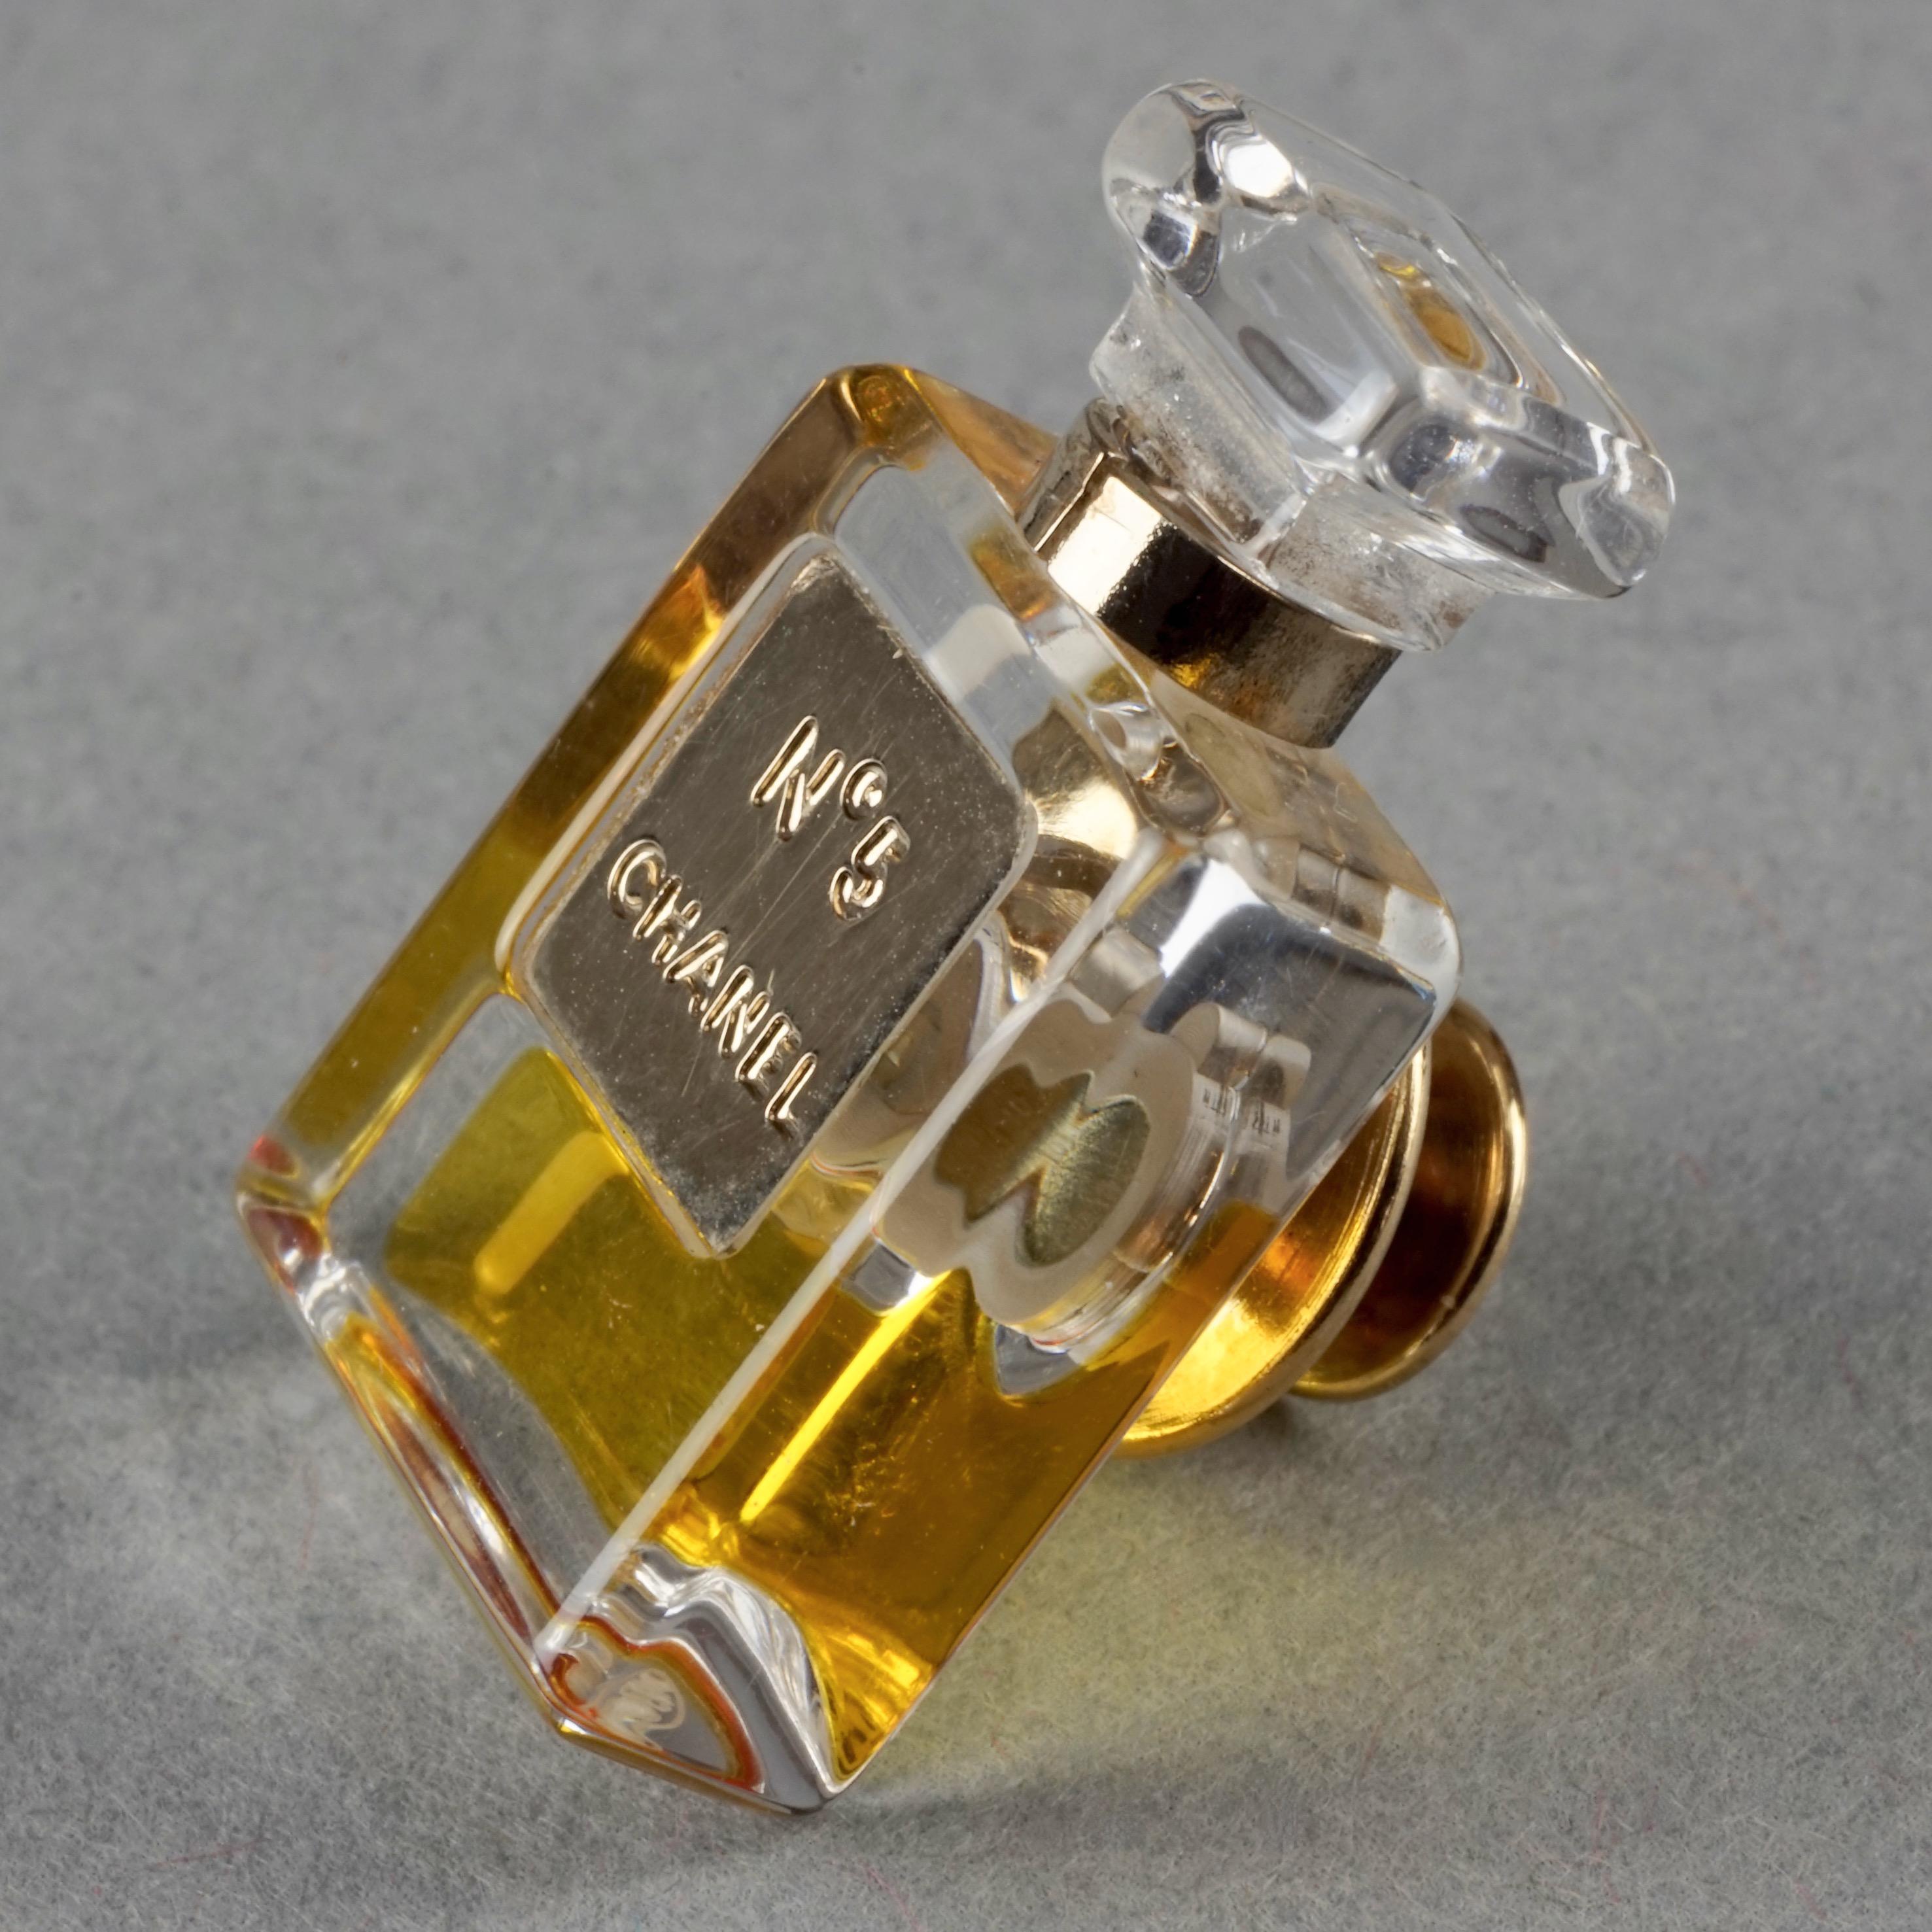 Broche vintage CHANEL n°5 Miniature en forme de bouteille de parfum avec épingle 1